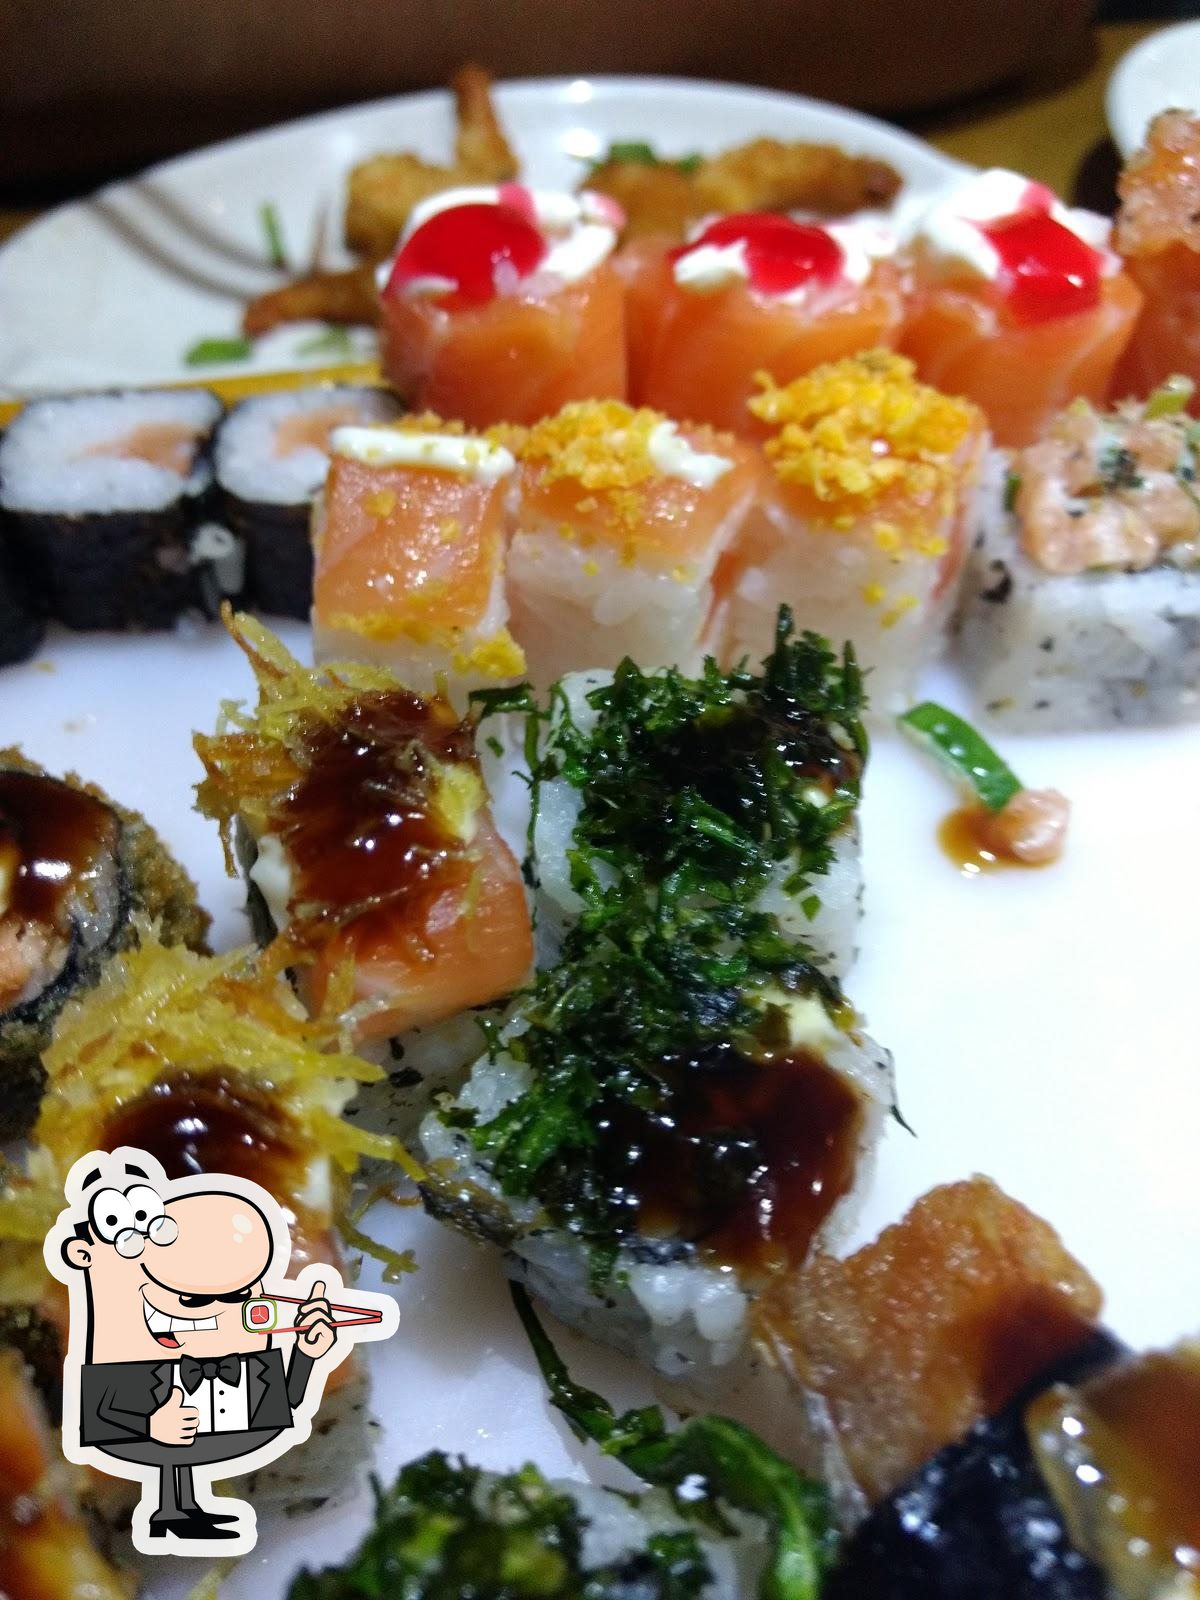 Watashi Sushi Piracicaba - Watashi agora no iFood